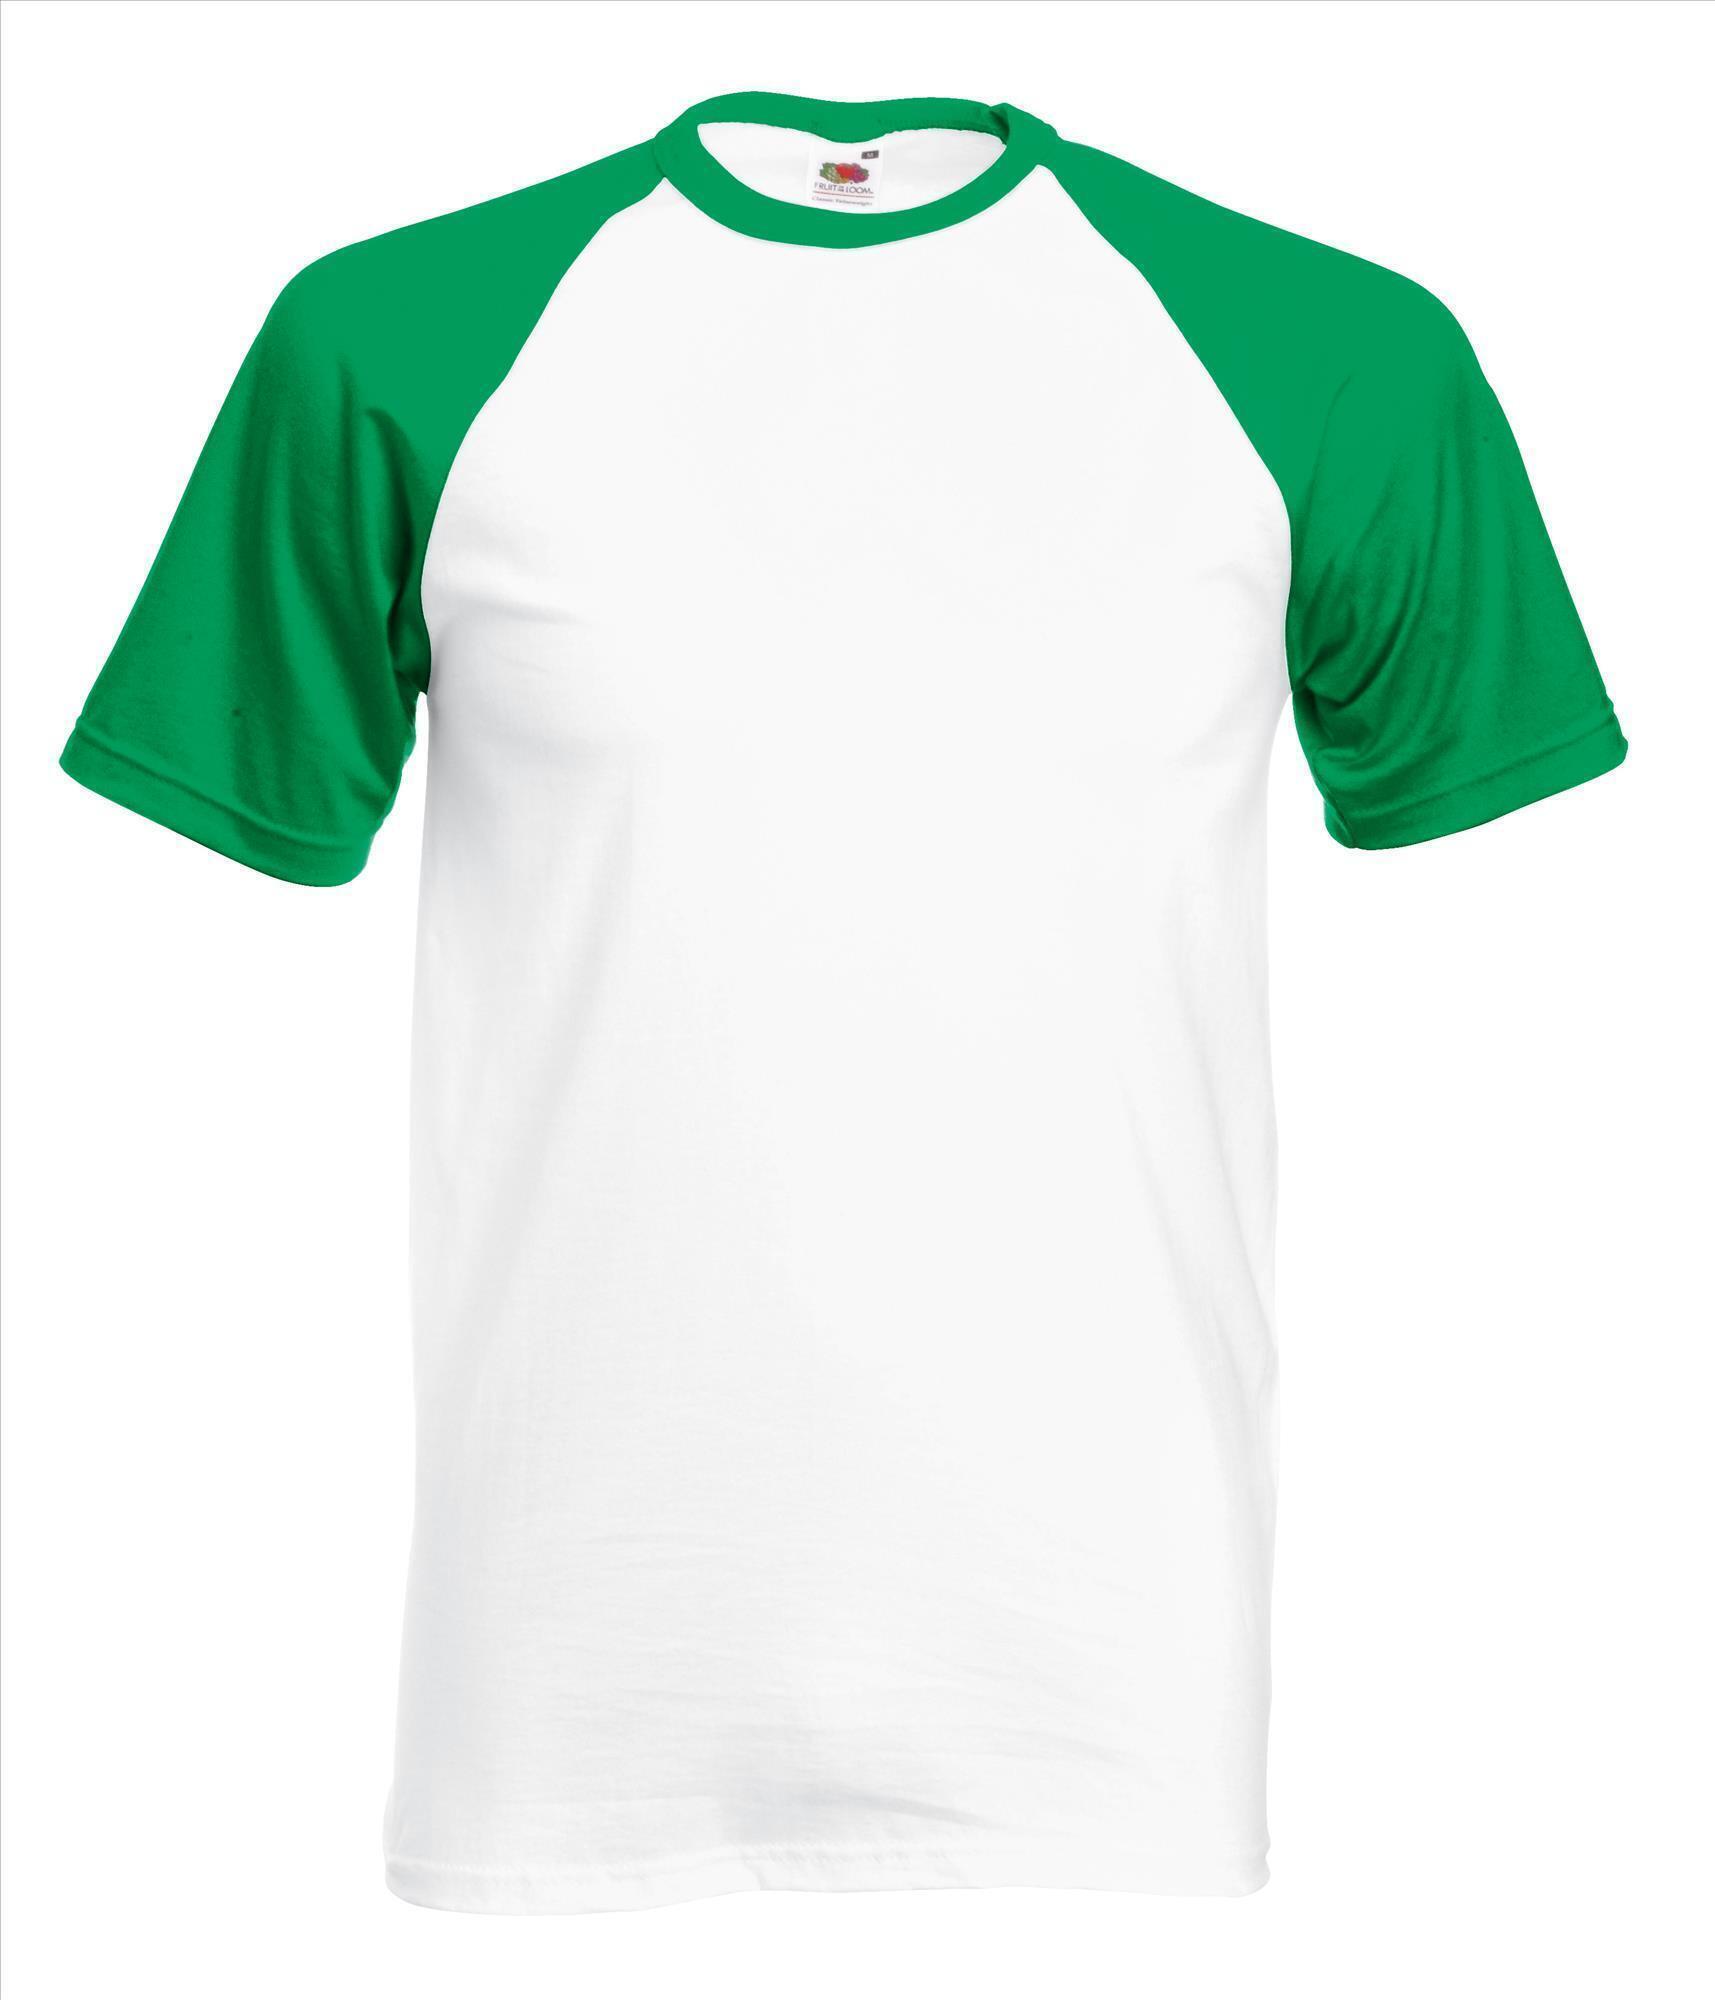 Heren T-shirt met raglanmouwen voor mannen wit shirtje met groene mouwen